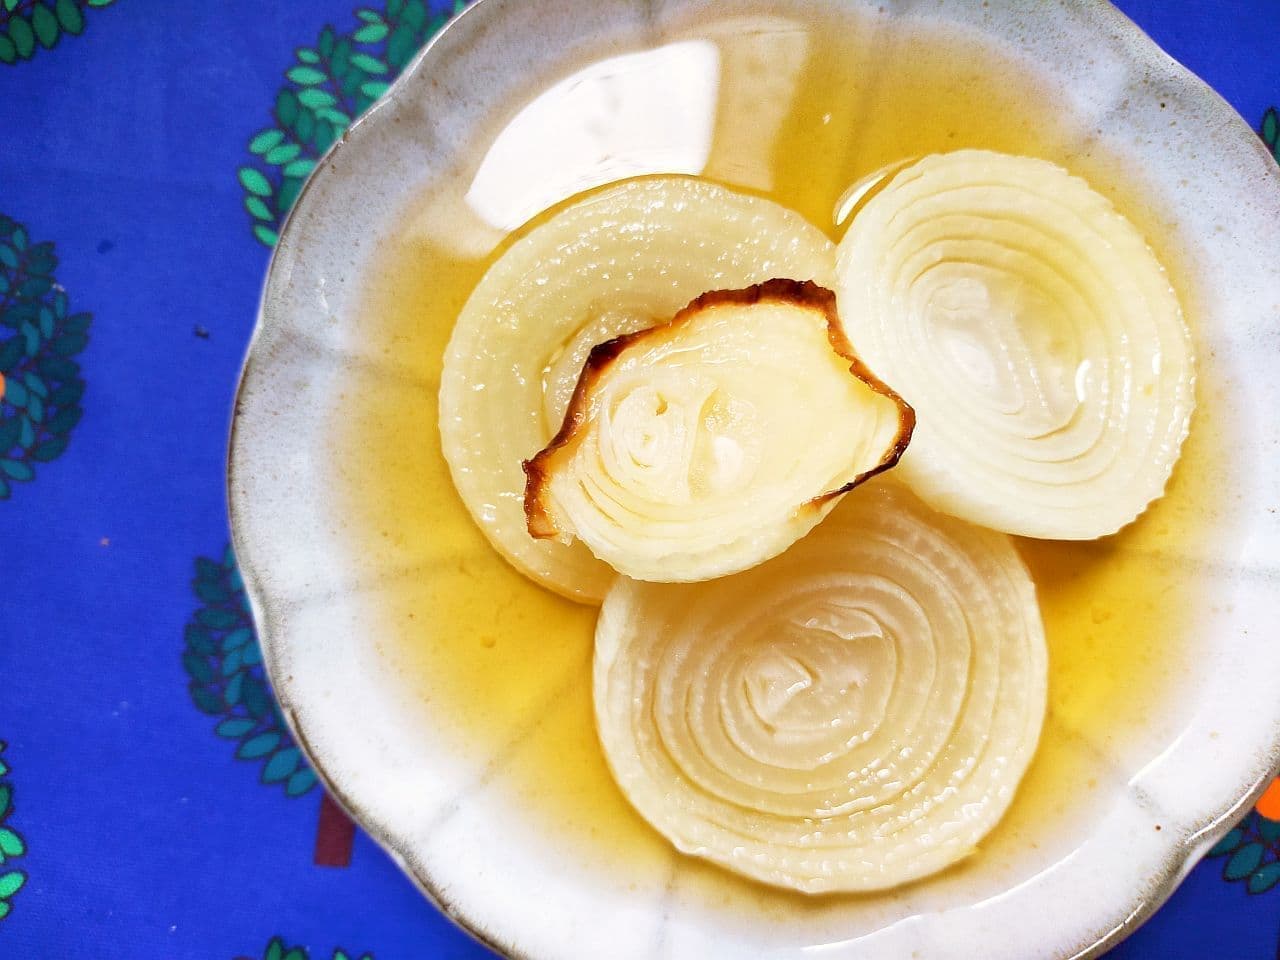 "Smear new onion" recipe